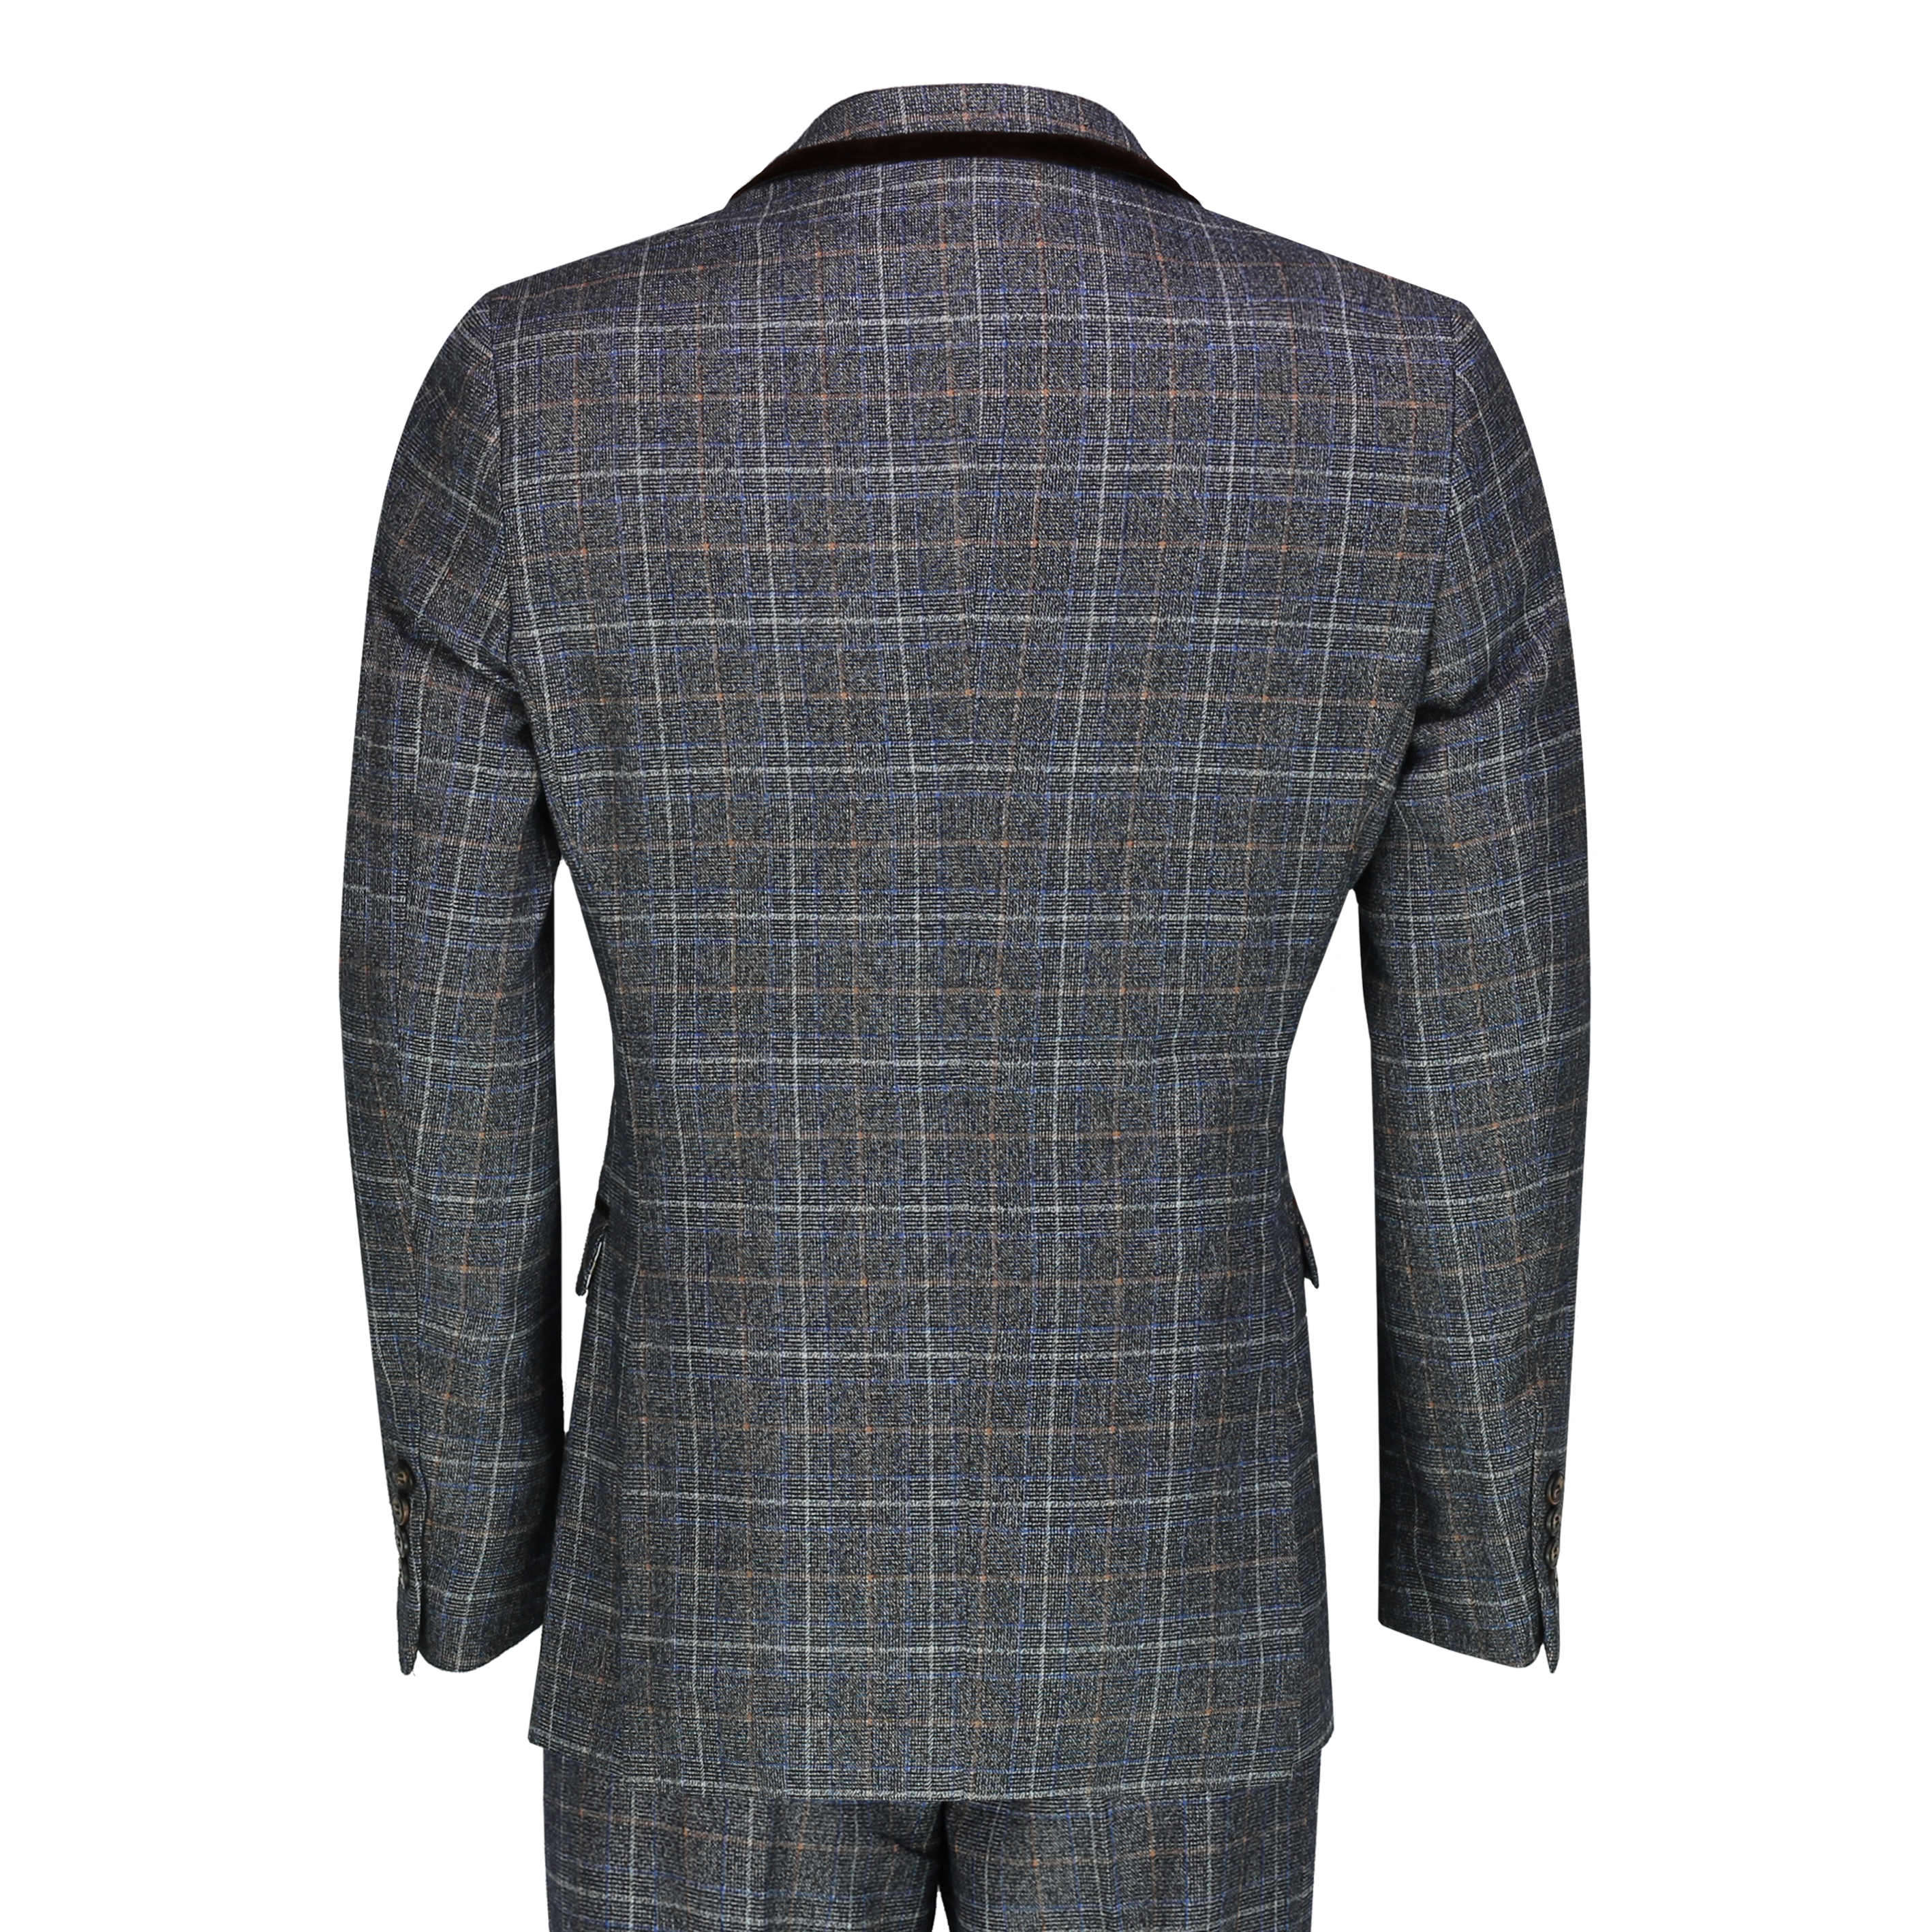 Men’s 3 Piece Vintage Tweed Suit Retro Prince of Wales Check Smart ...